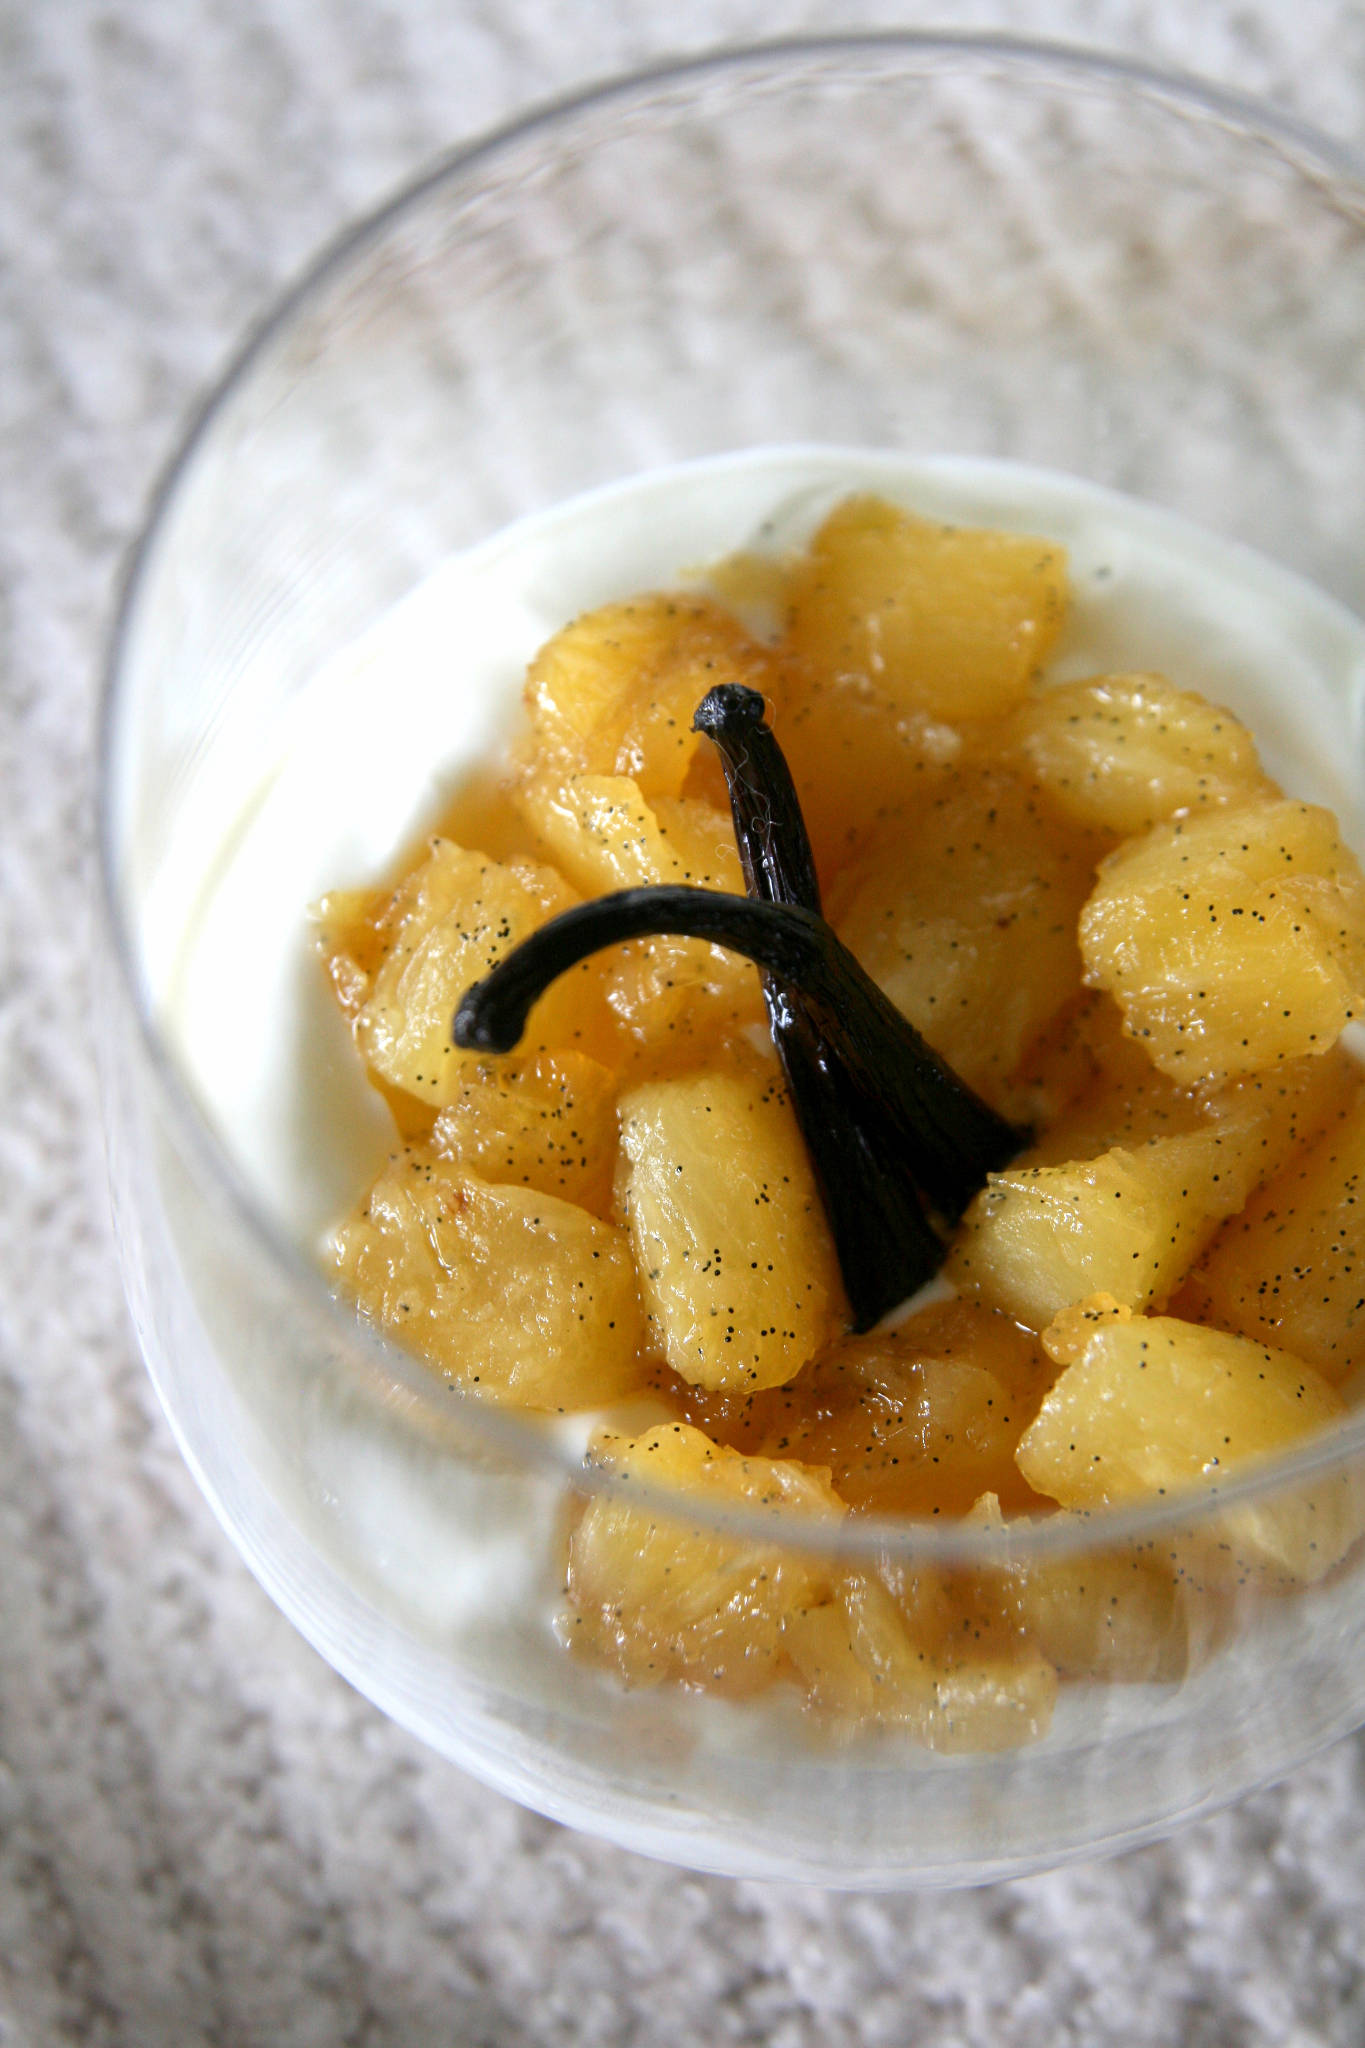 Ananas caramélisé à la vanille